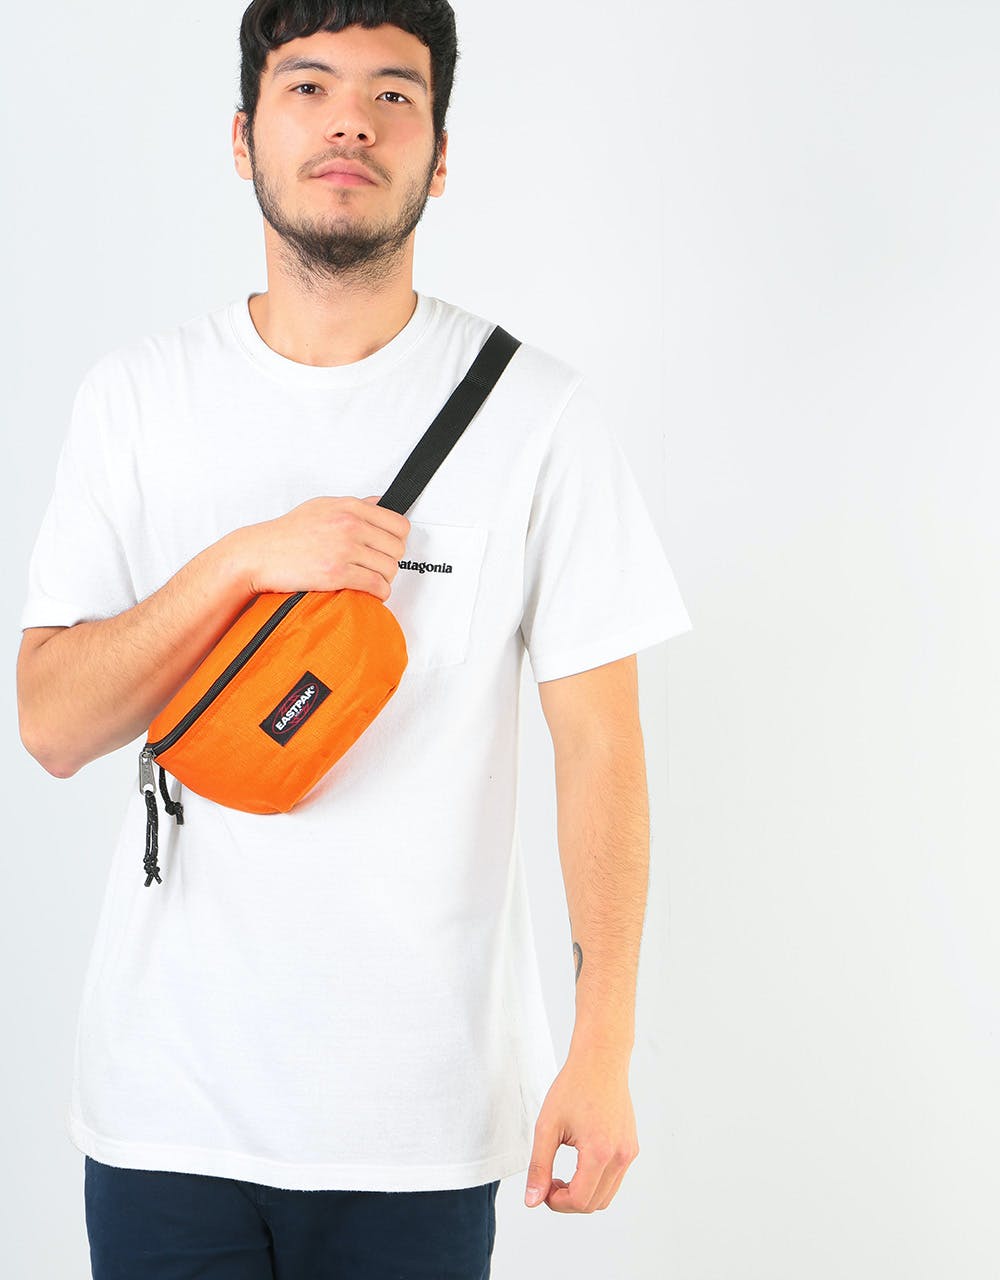 Eastpak Springer Cross Body Bag - Cheerful Orange